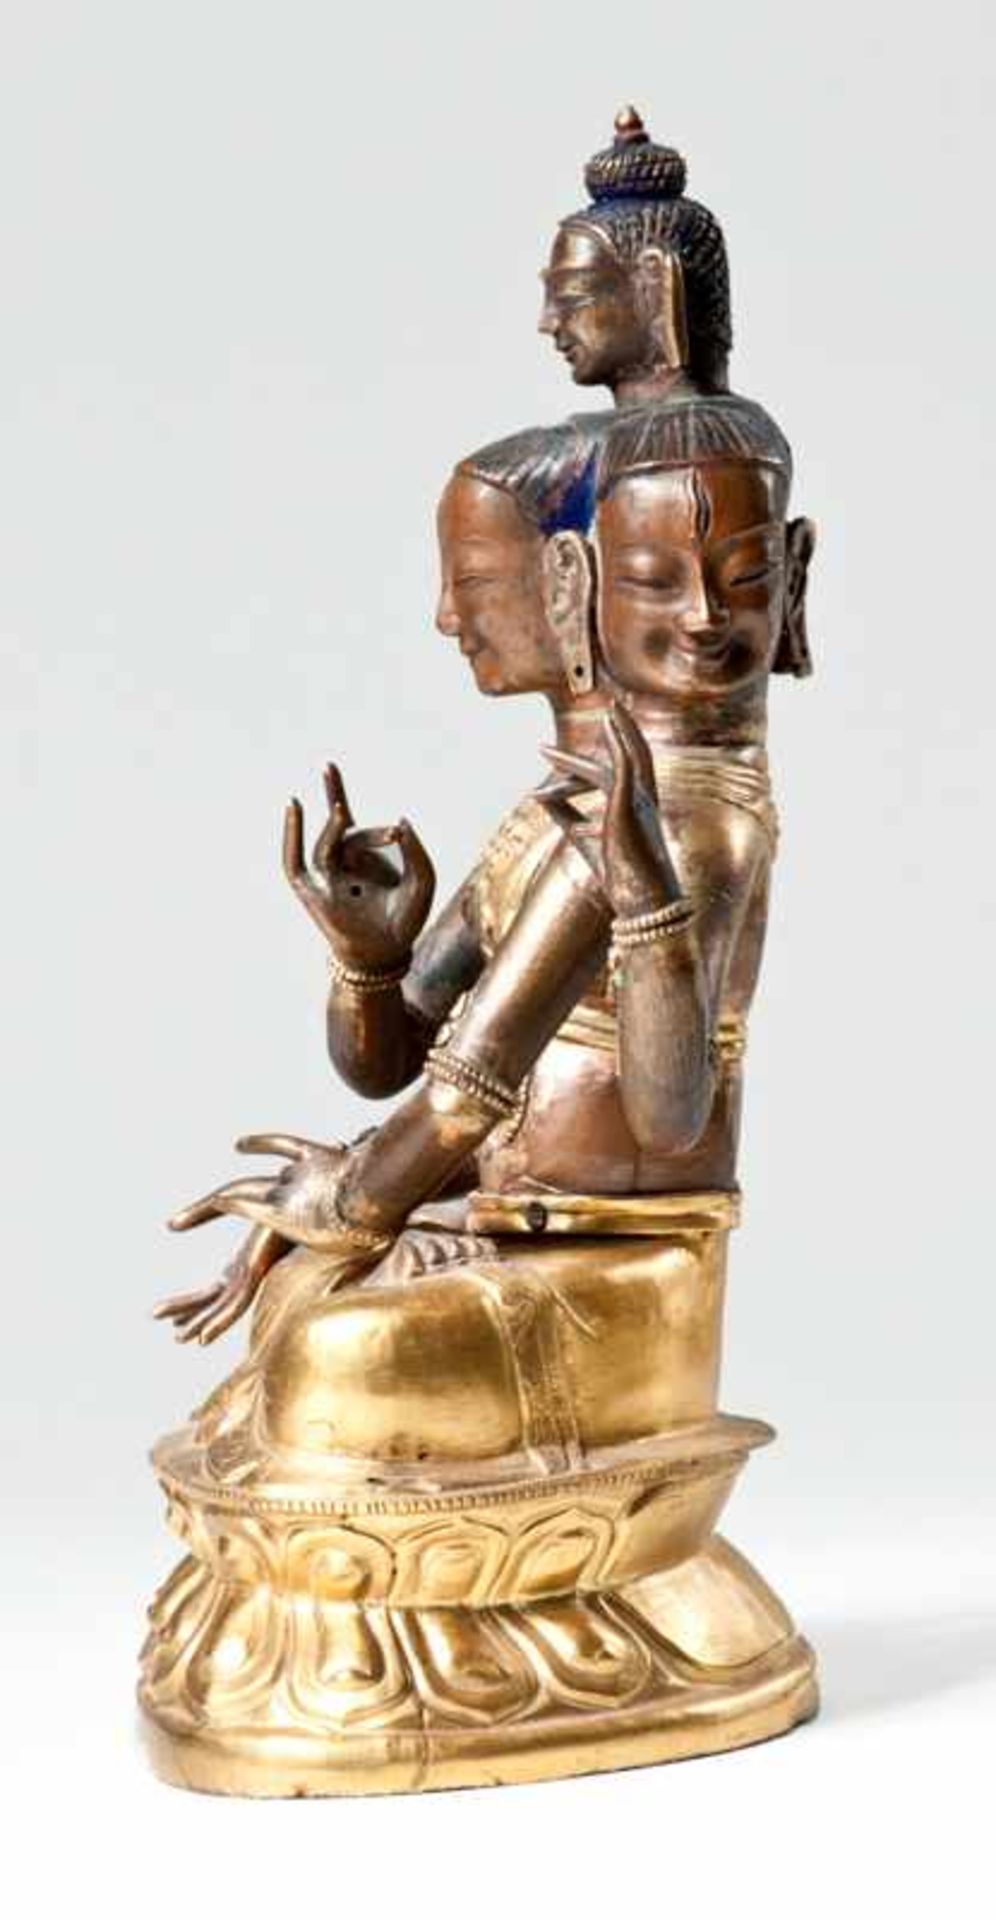 DREIKÖPFIGER BODHISATTVA MIT DEM KOPF DES BUDDHA Feuervergoldete Bronze. Sinomongolisch, 18. Jh. - Image 2 of 8